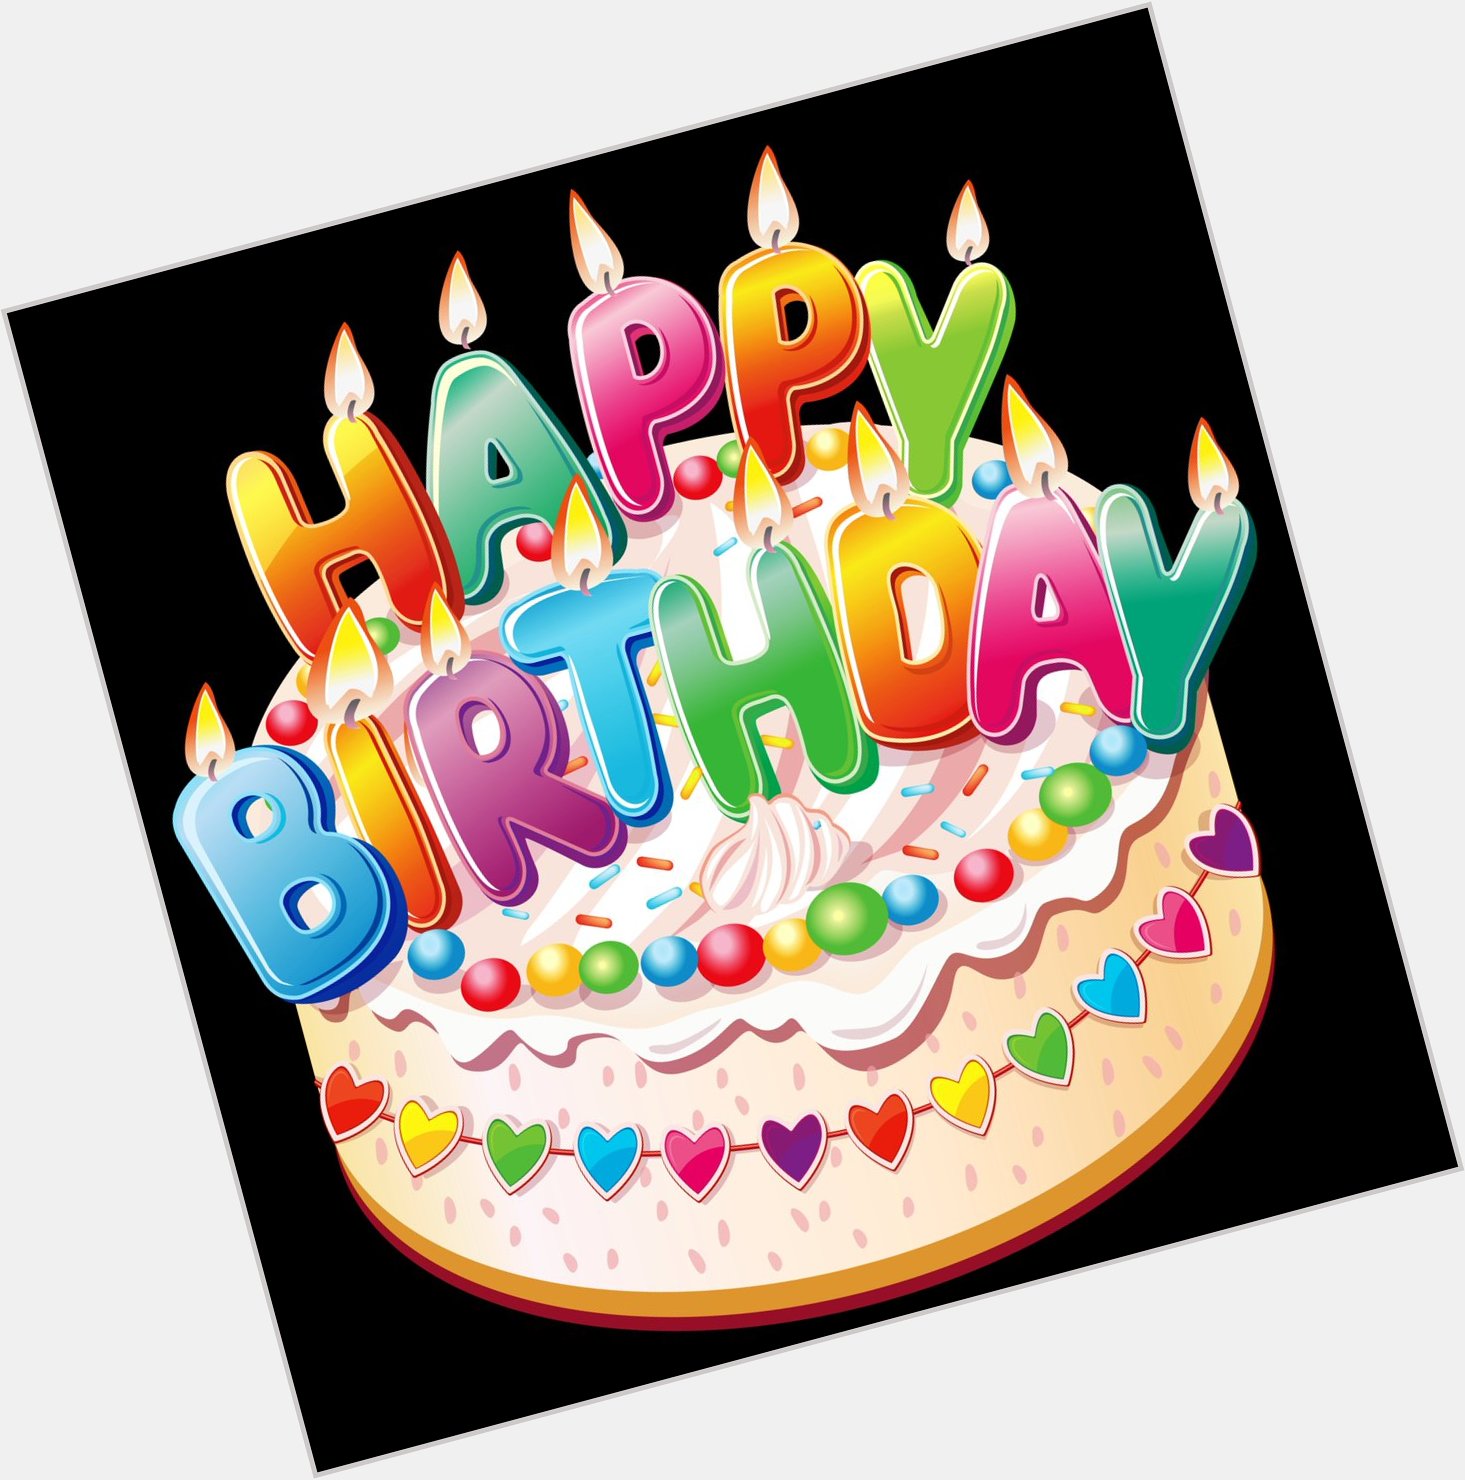 Wishing my friend Tony Todd a Very Happy Birthday and Many Happy Returns!!!! 